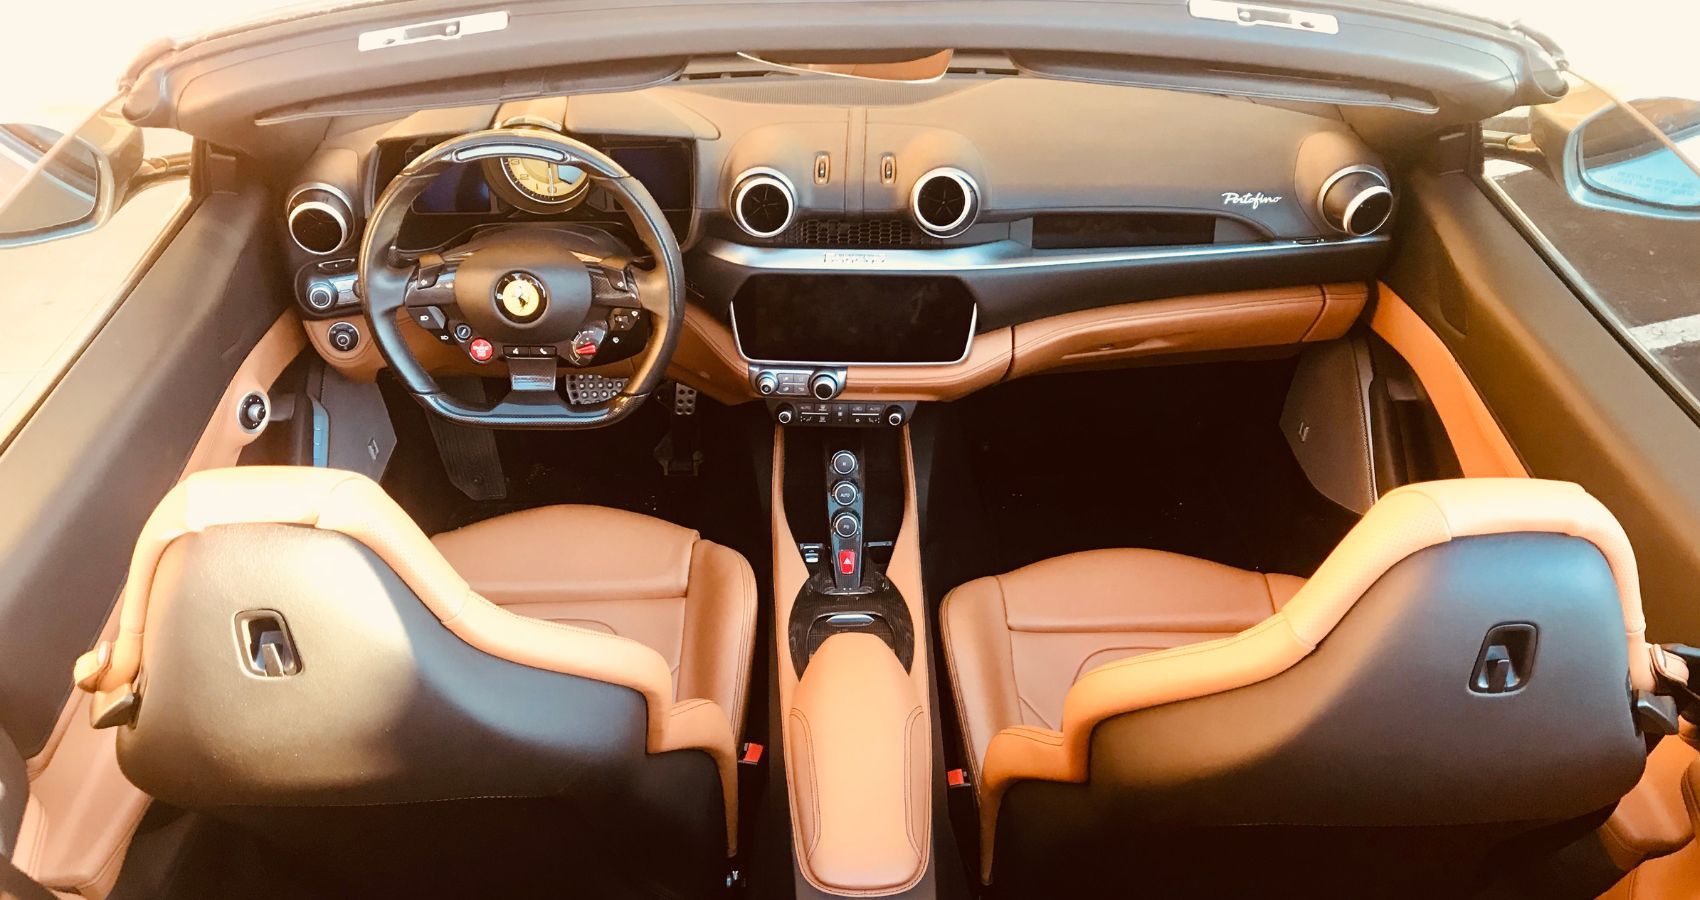 2020 Ferrari Portofino interior in cuoio